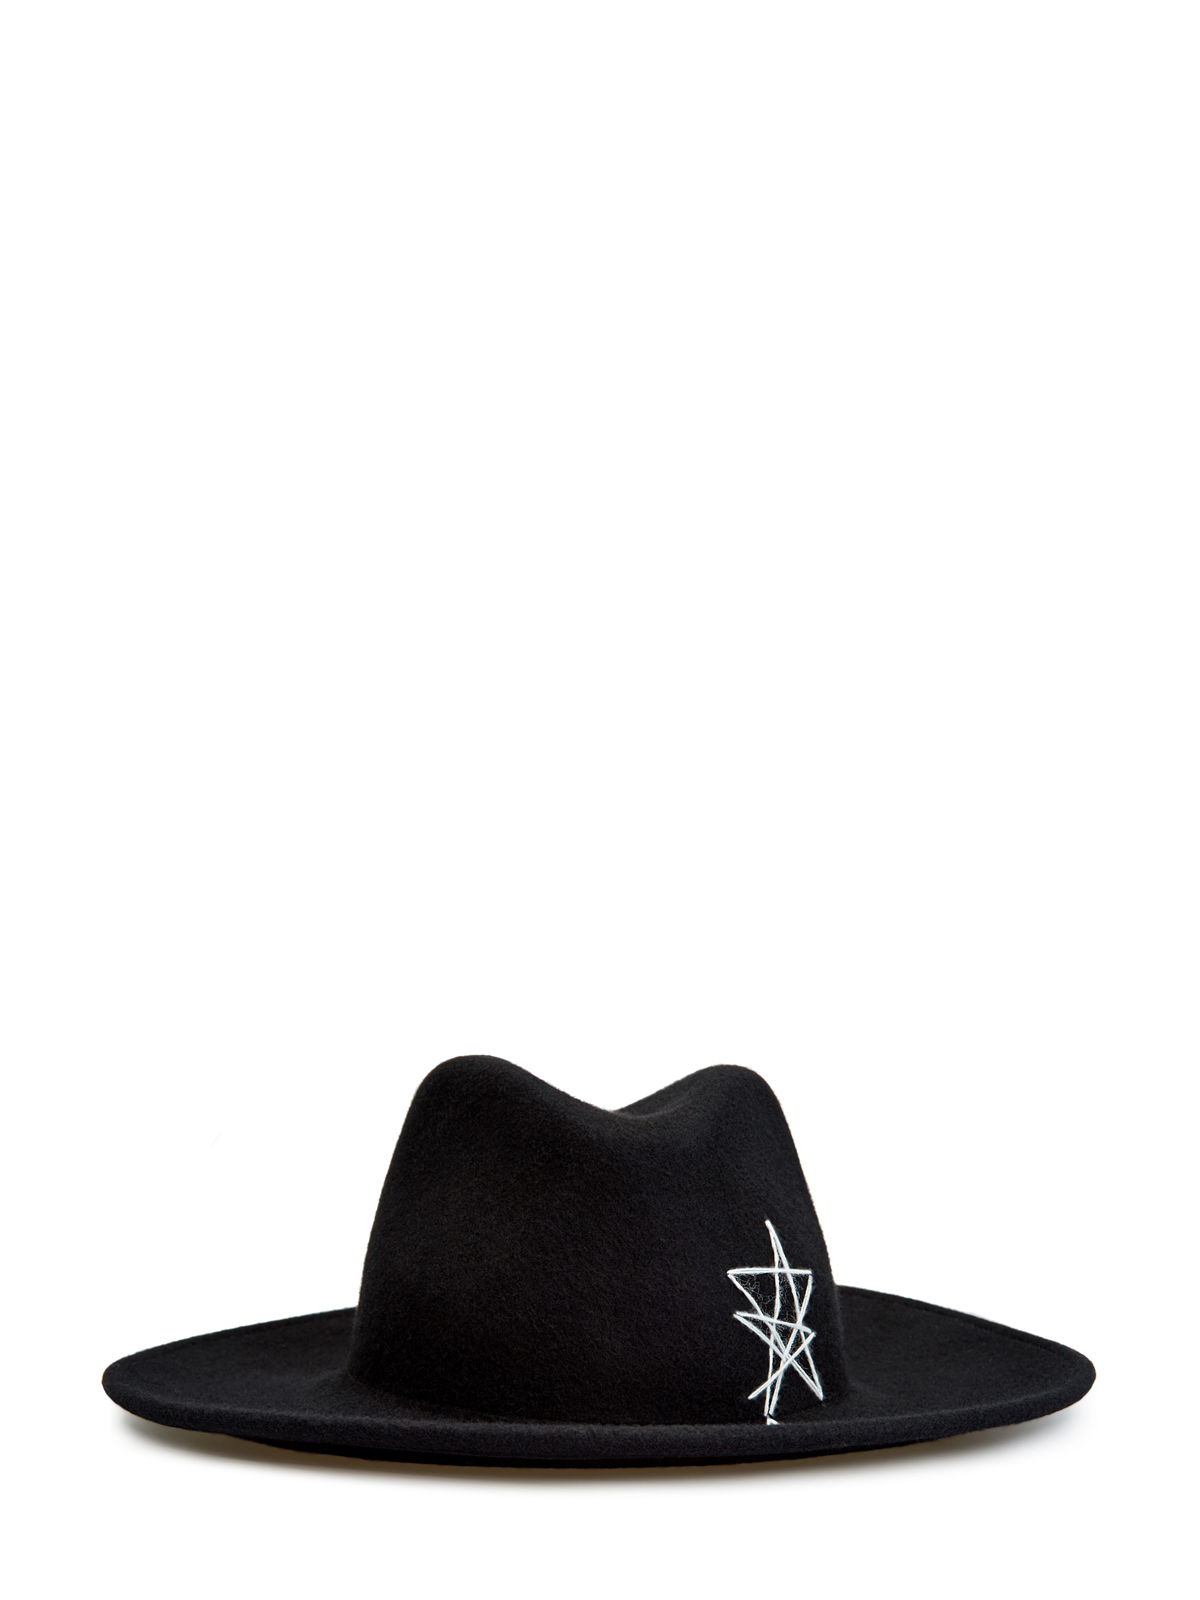 Шляпа-трилби из шерстяного драпа с вышивкой LORENA ANTONIAZZI, цвет черный, размер S;M;L - фото 1